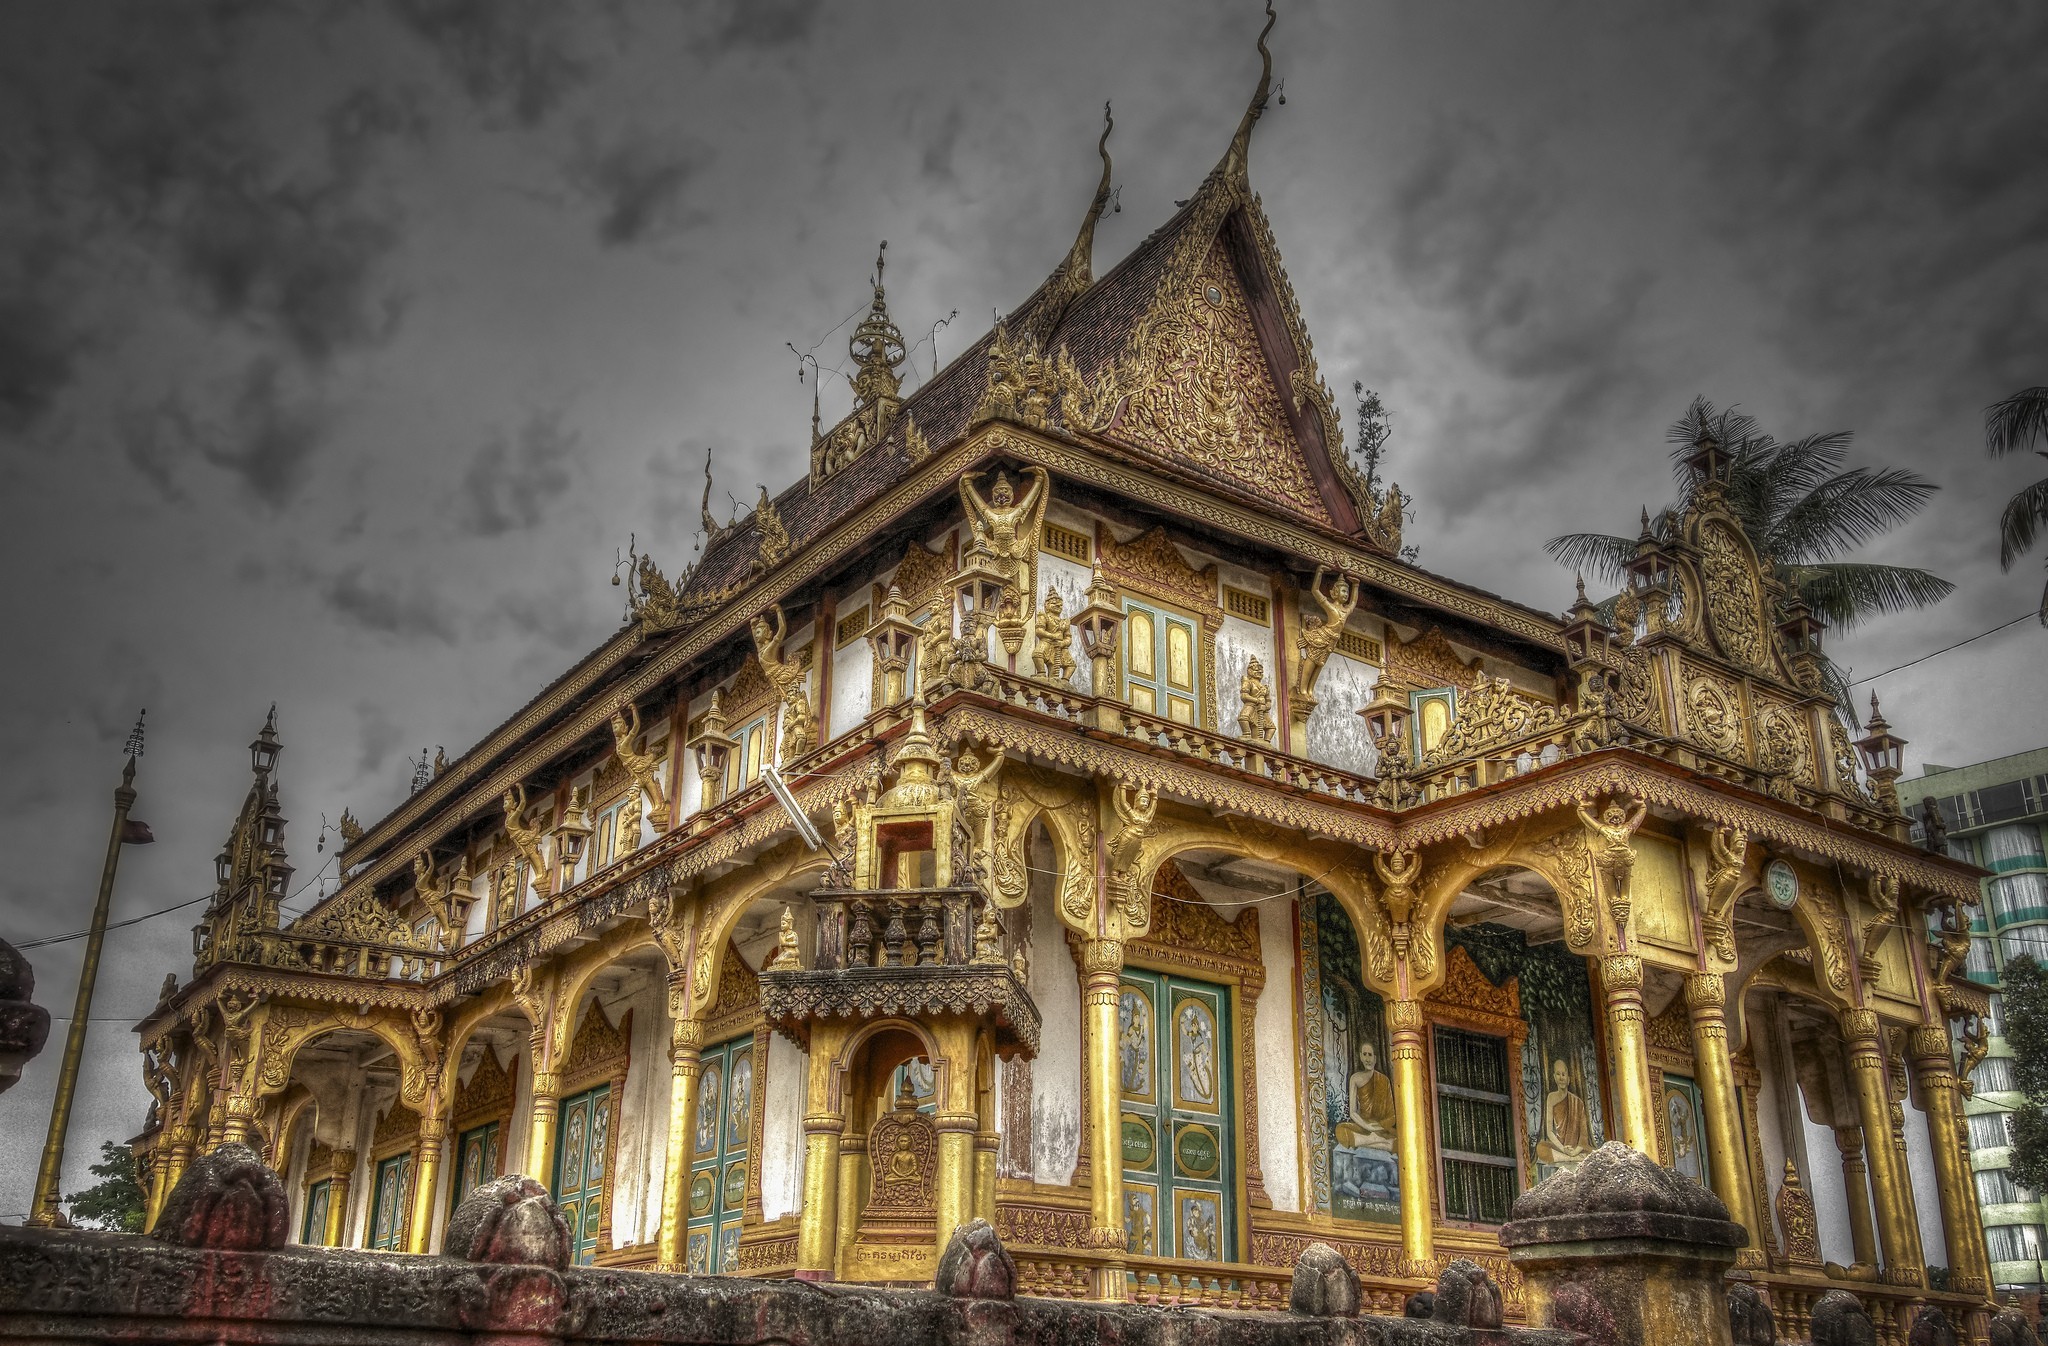 Популярные заставки и фоны Храм Пномпеня на компьютер